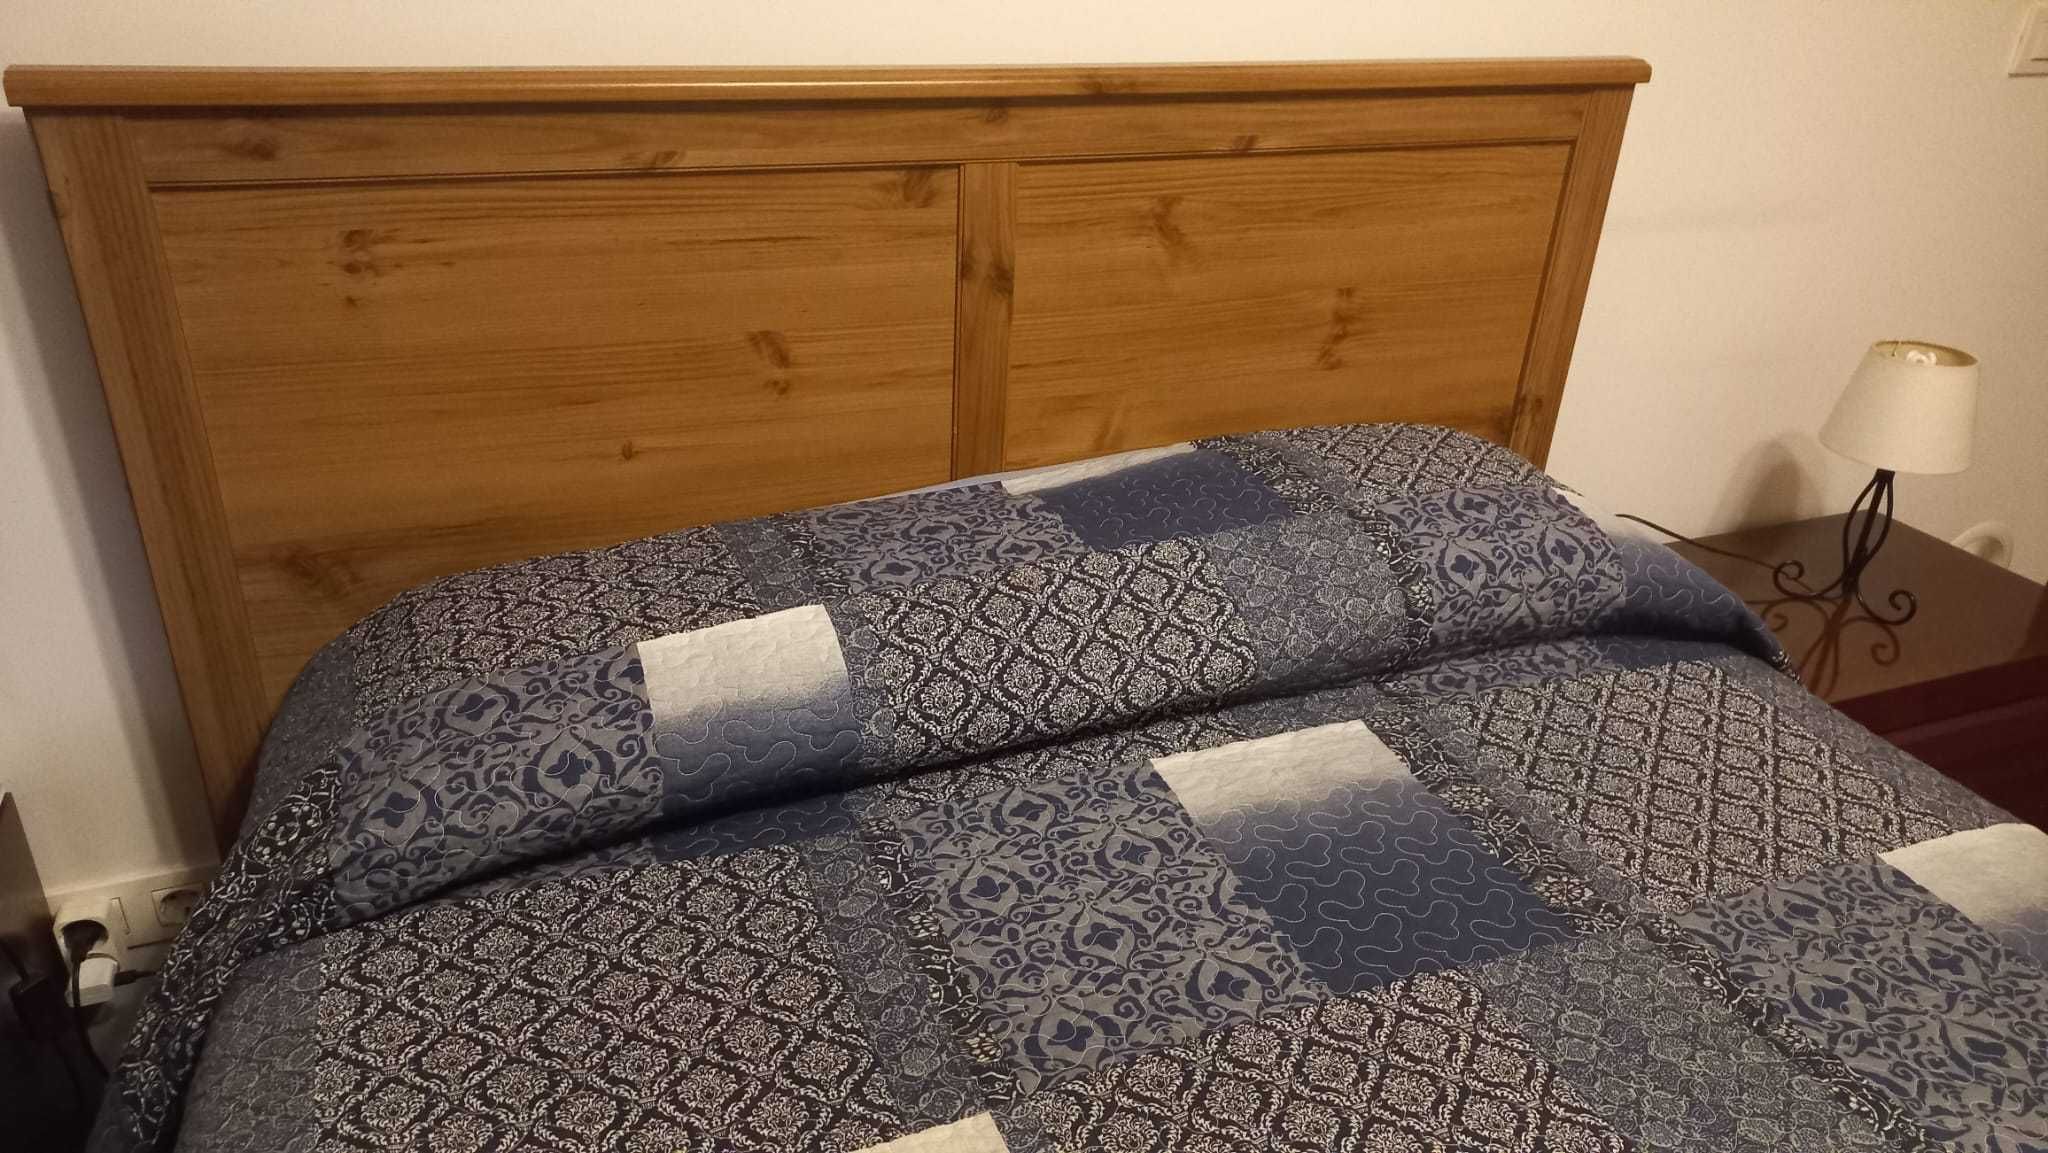 Cama casal IKEA (efeito madeira) + colchão Ikea Morgedal + estrado